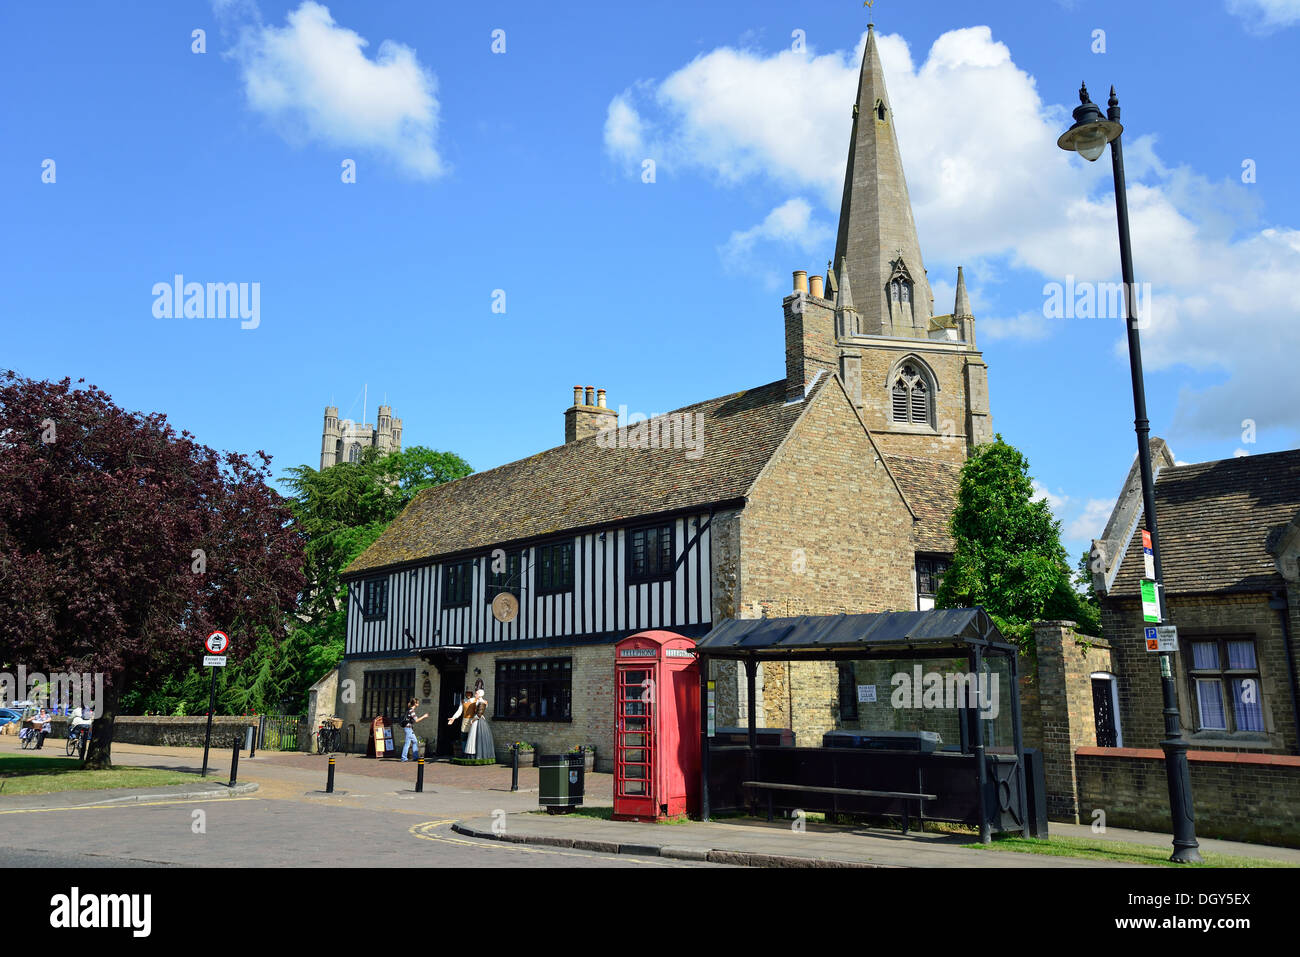 Maison d'Oliver Cromwell (Centre d'Information Touristique), Church Lane, Ely, Cambridgeshire, Angleterre, Royaume-Uni Banque D'Images